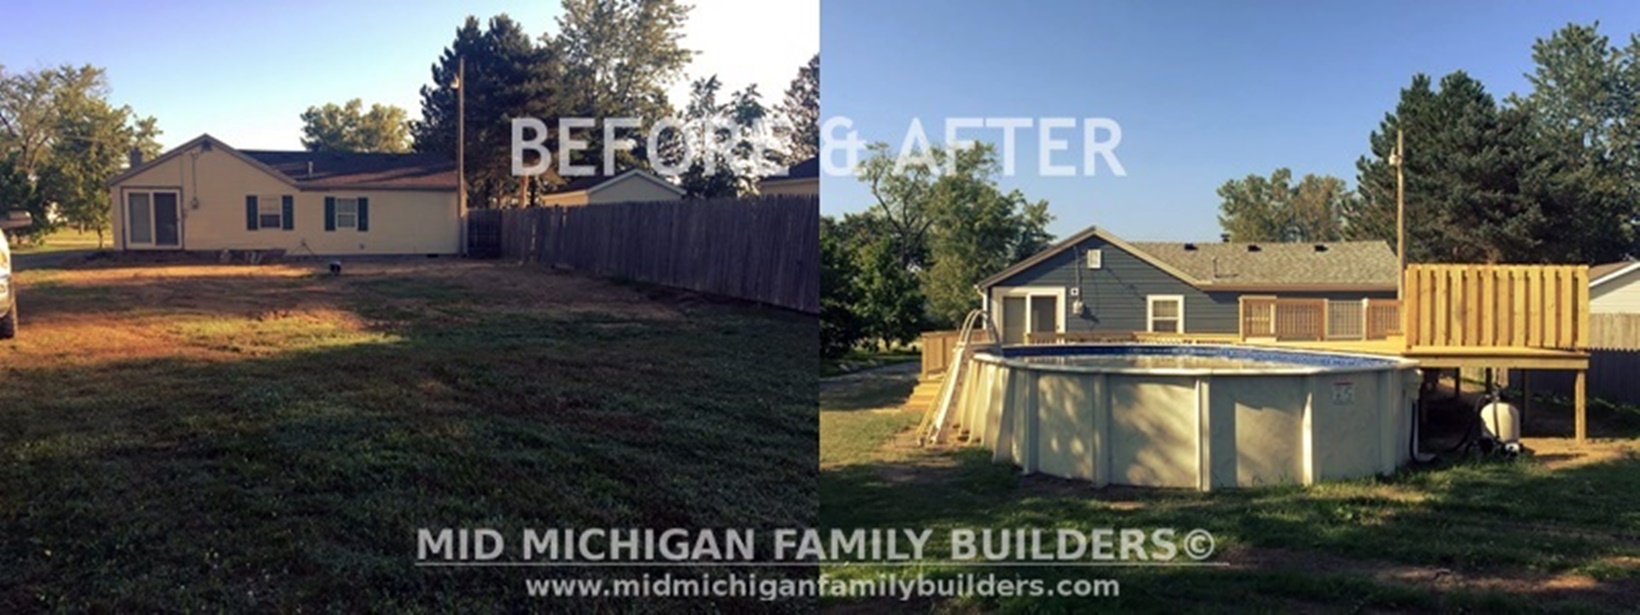 Mid Michigan Family Builders Big Job Before Pics 08 2018 00-horz